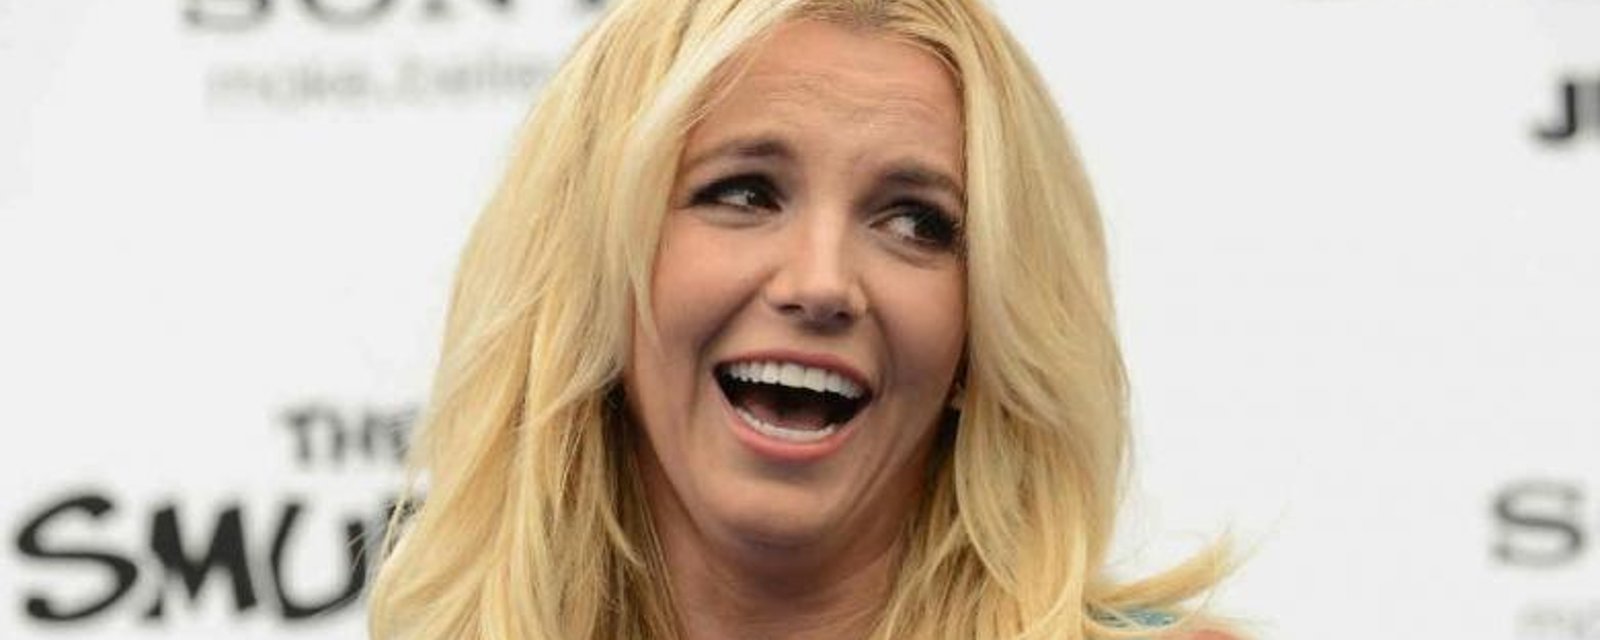 Les préférences sexuelles de Britney Spears font réagir!